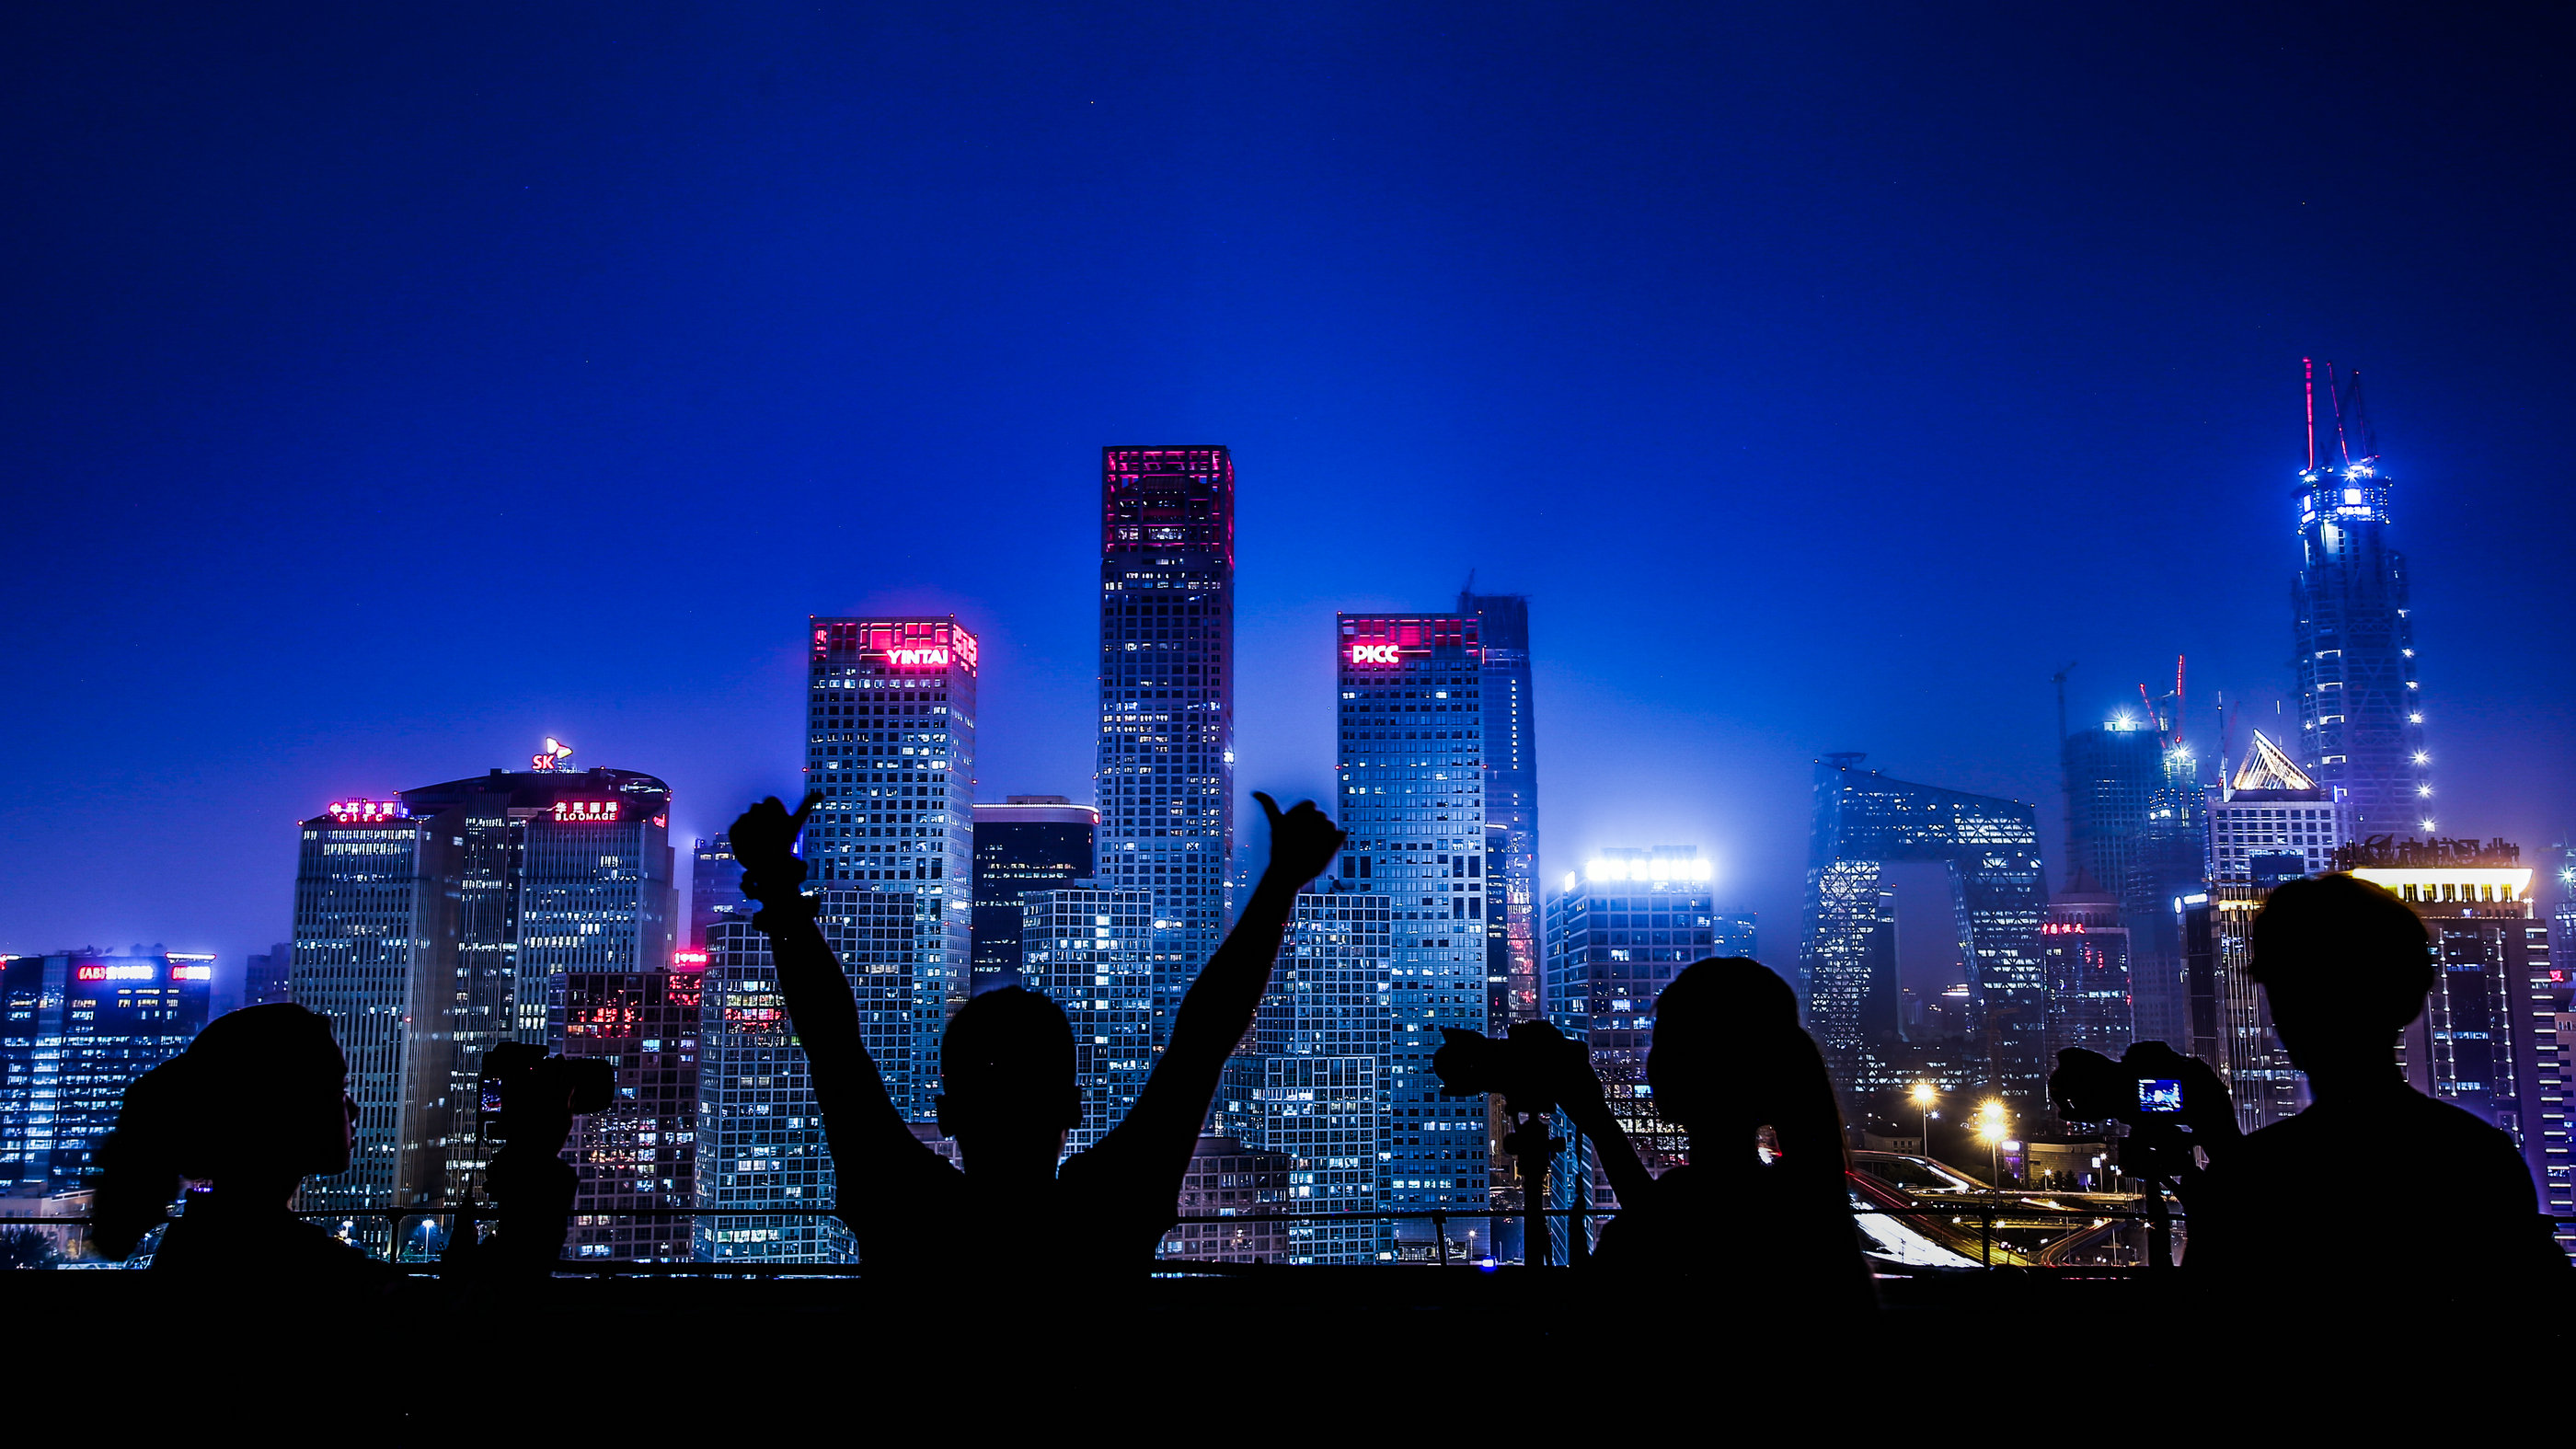 《中国2050年光伏发展展望》发布 2050年光伏将成我国第一大电源-广东元一能源有限公司